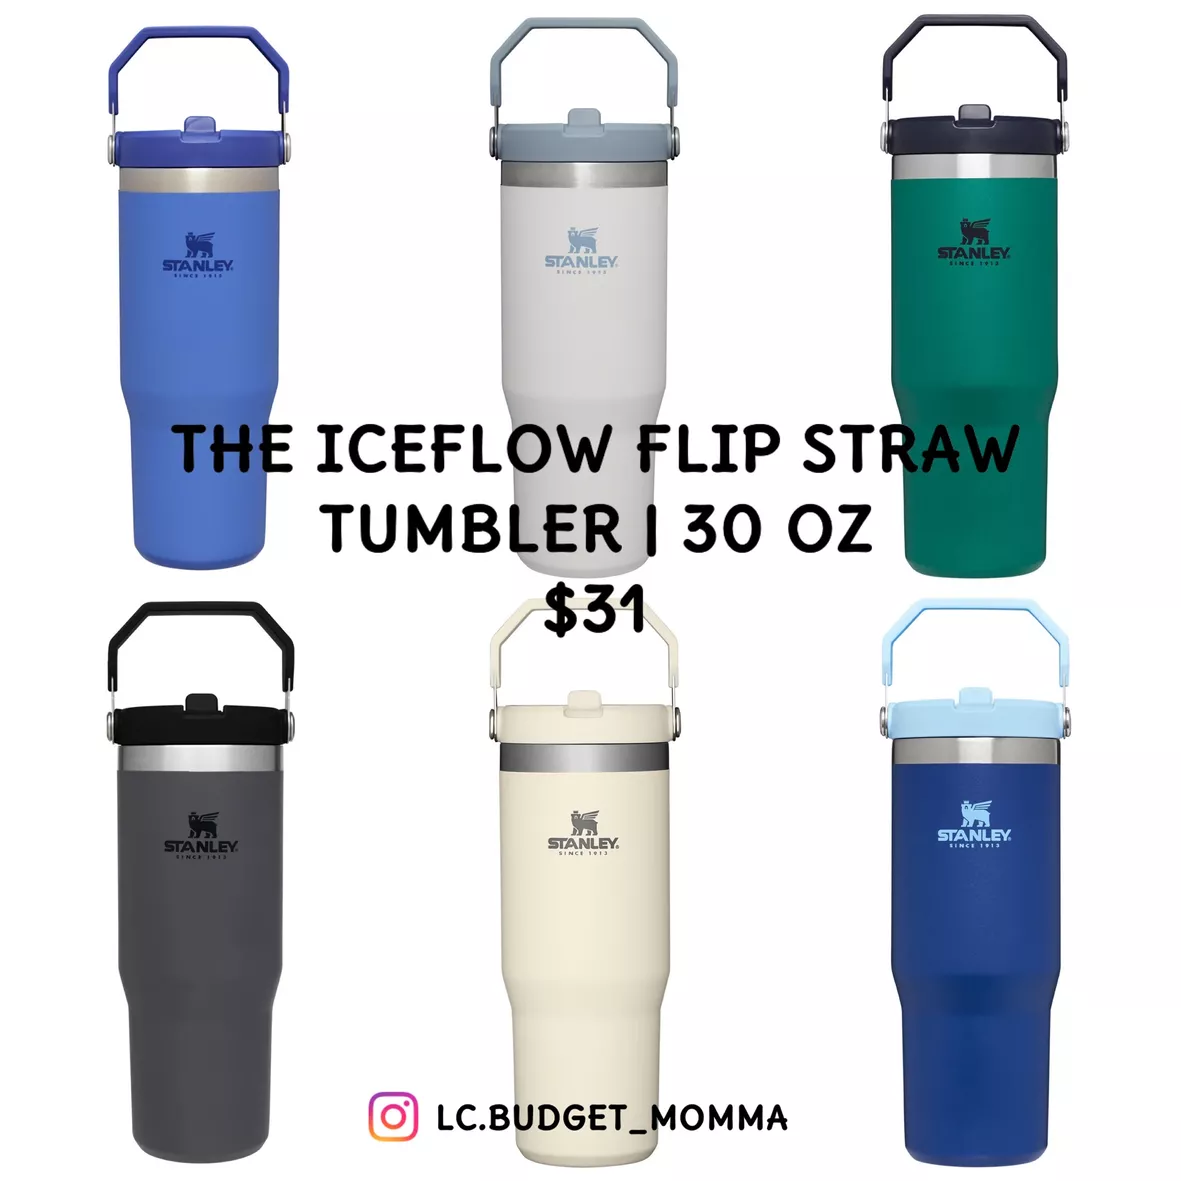 The IceFlow Flip Straw Tumbler, 30 OZ